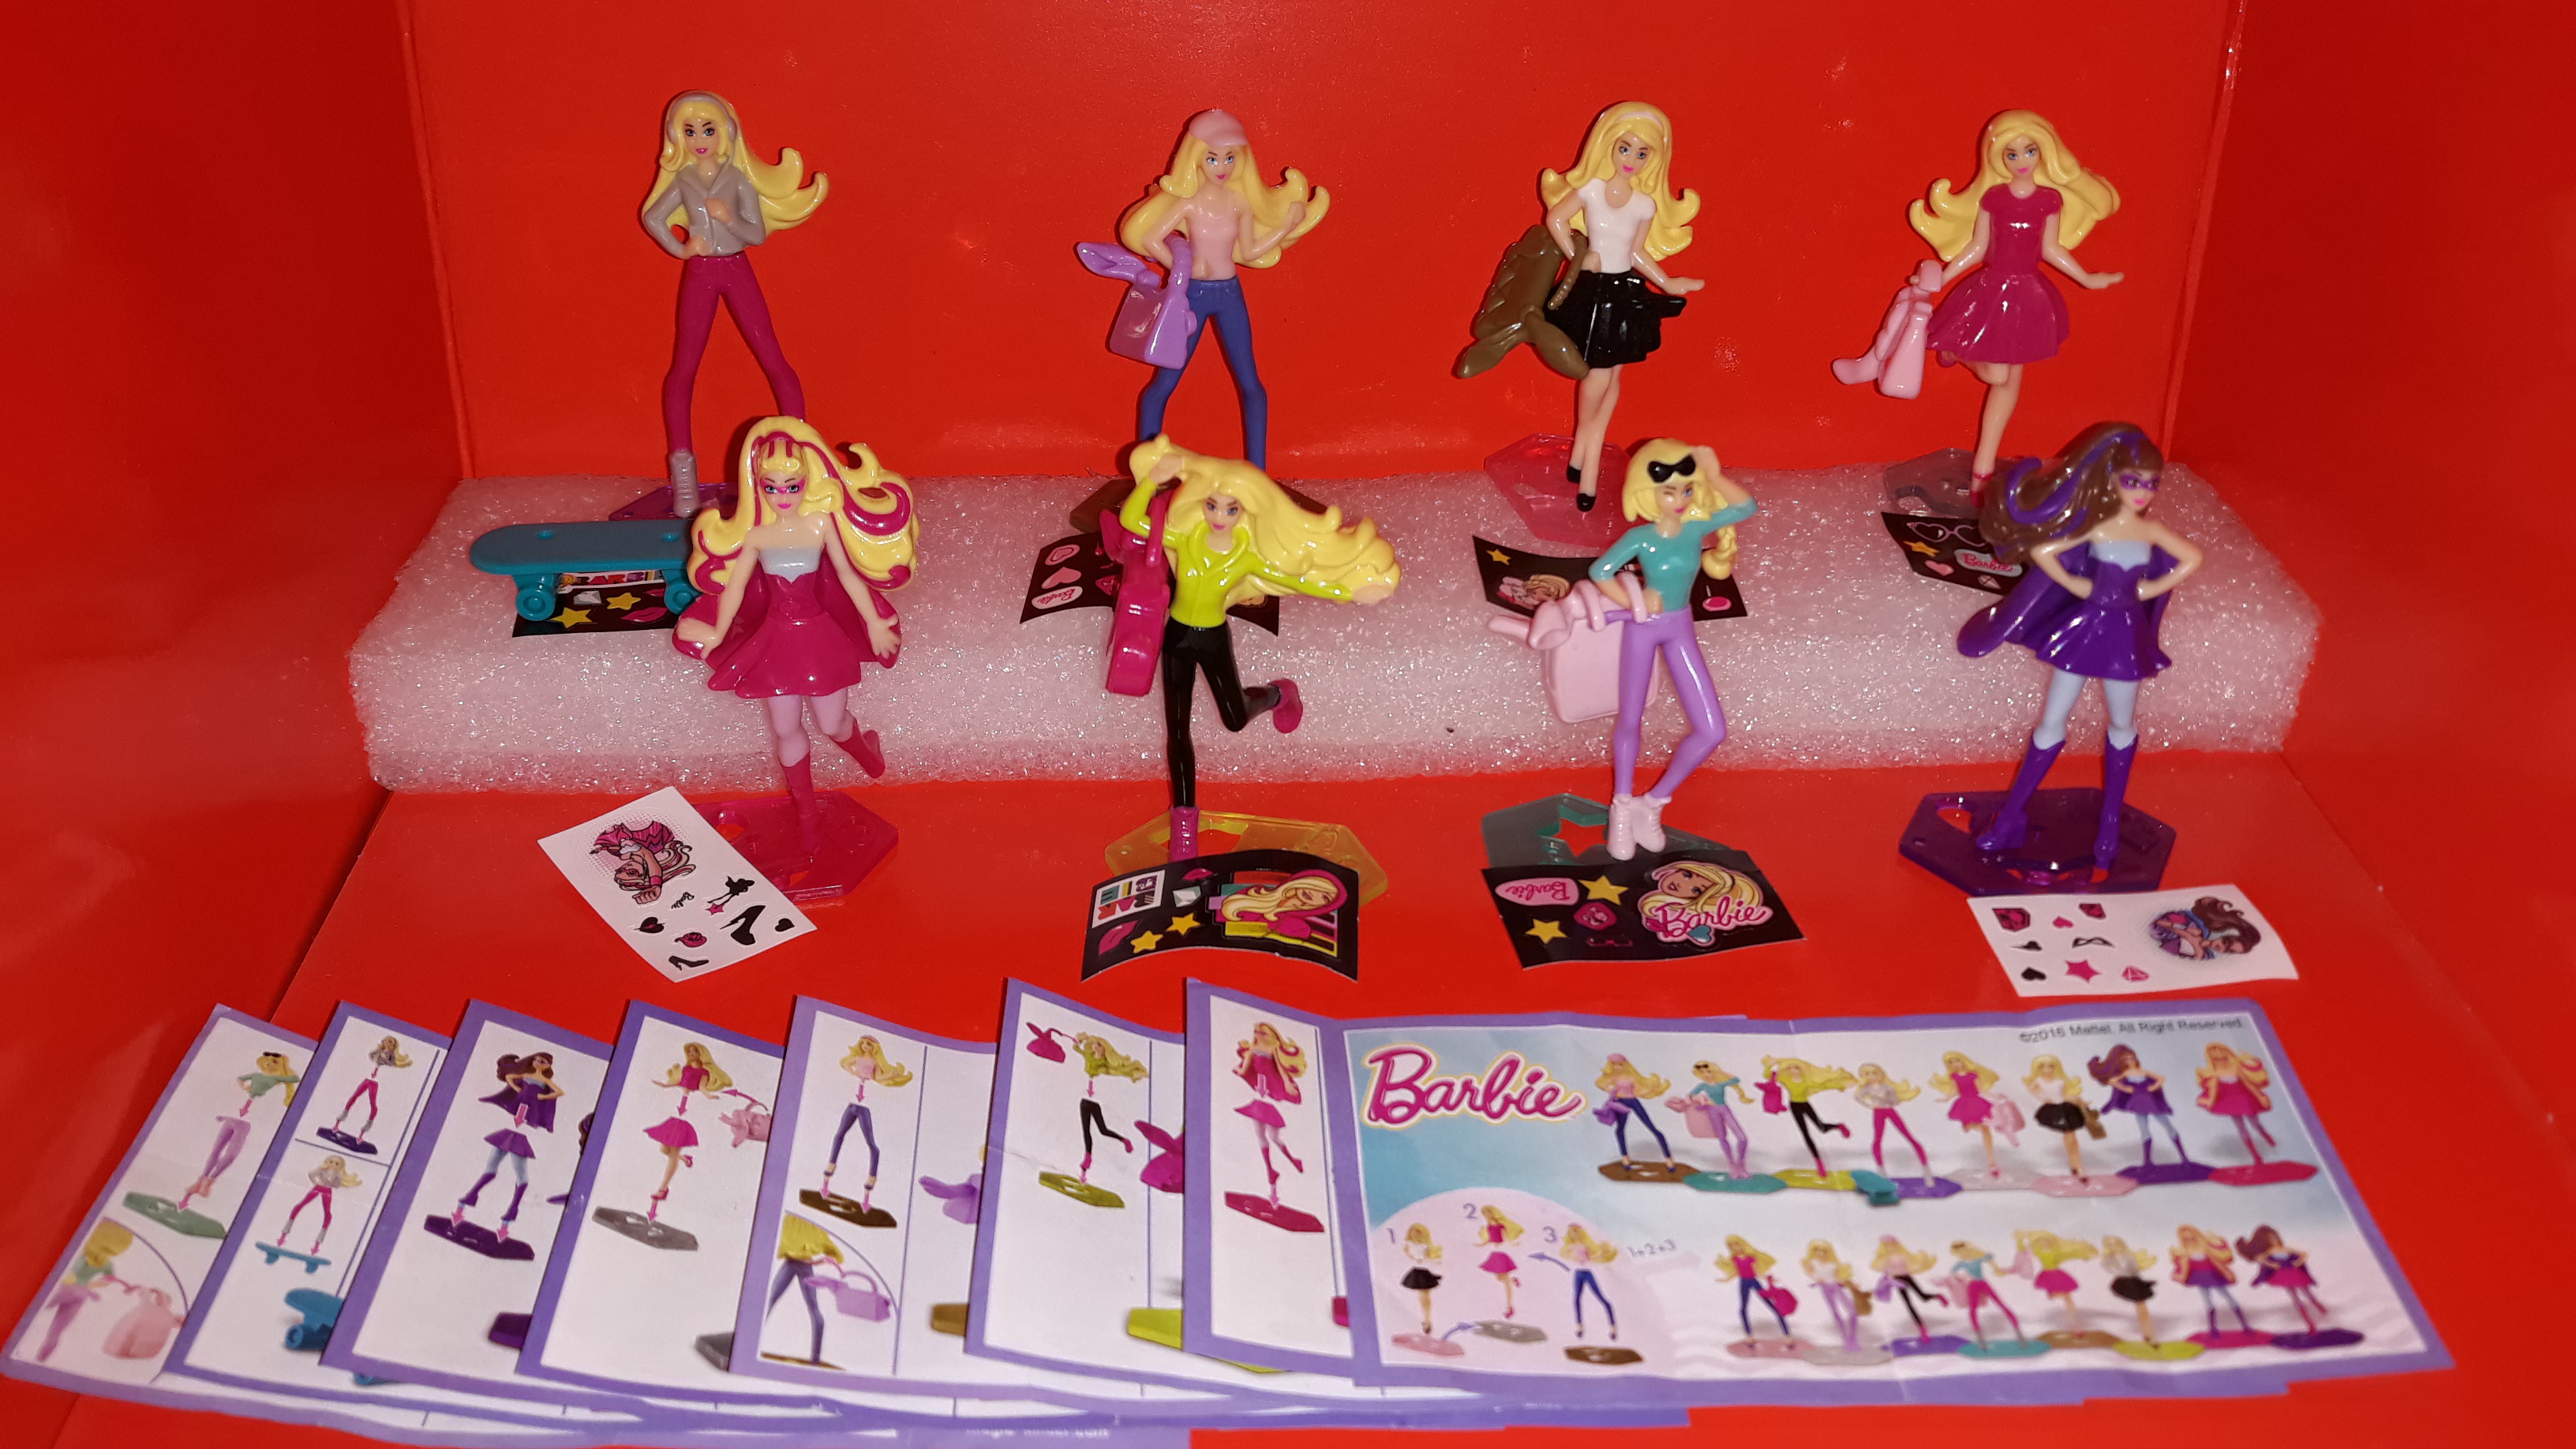 kinder surprise barbie 2019